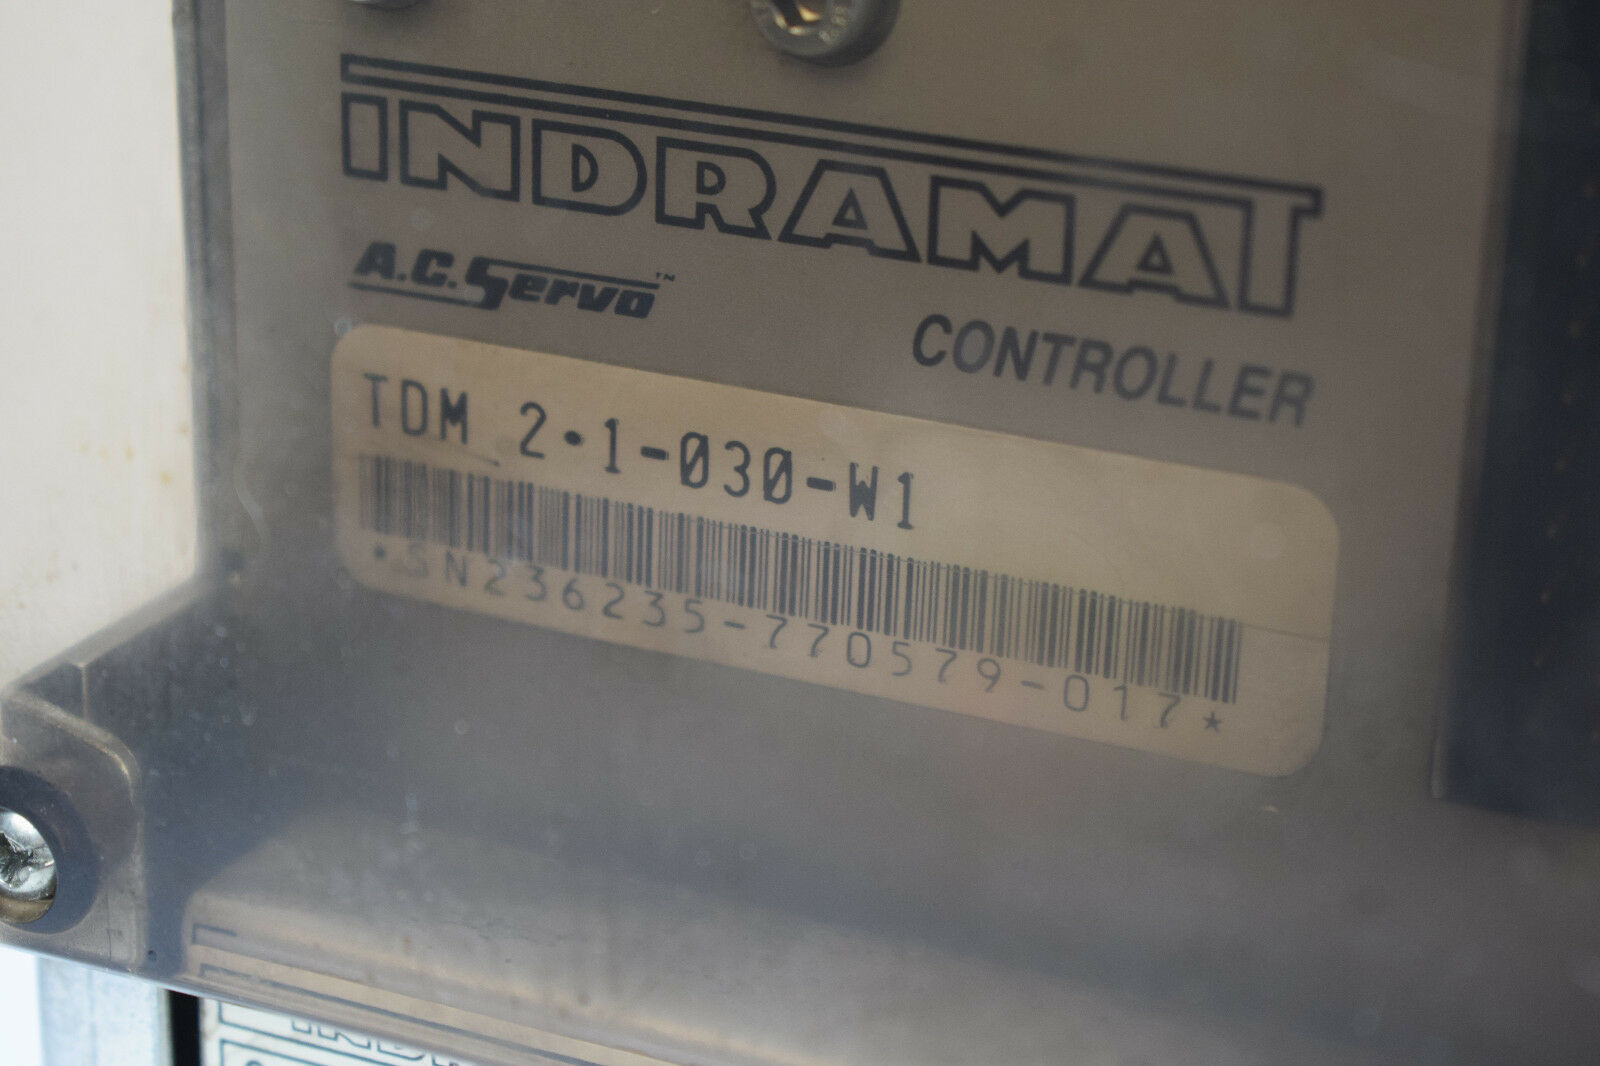 Indramat A.C.Servo Controller TDM 2.1-030-W1 